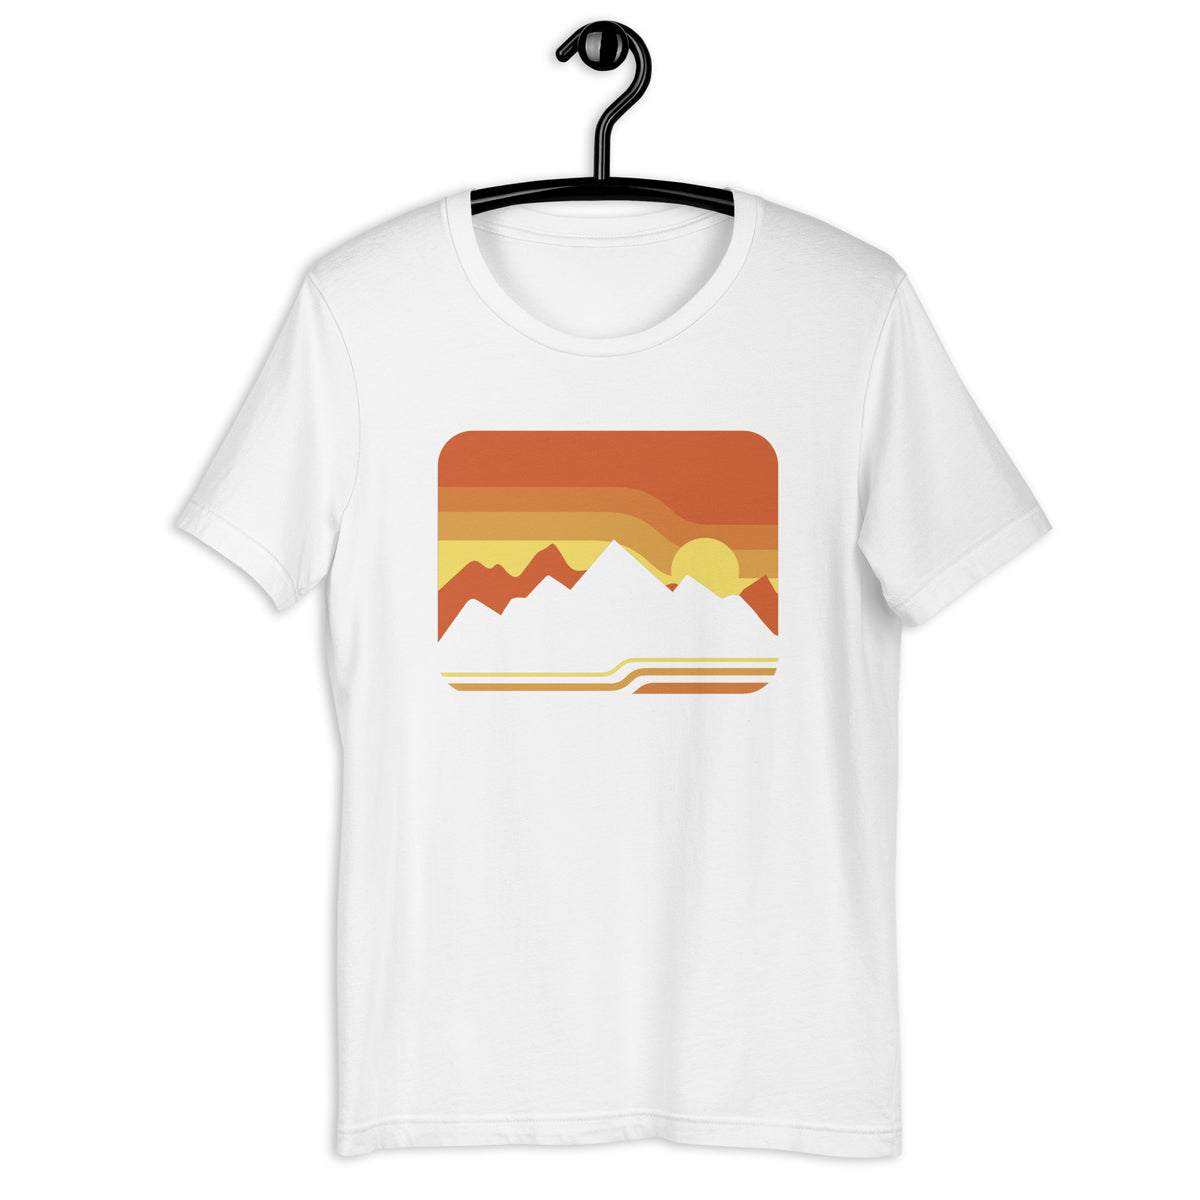 Retro Mountains Sunset Sunrise Unisex t-shirt - Area F Island Clothing